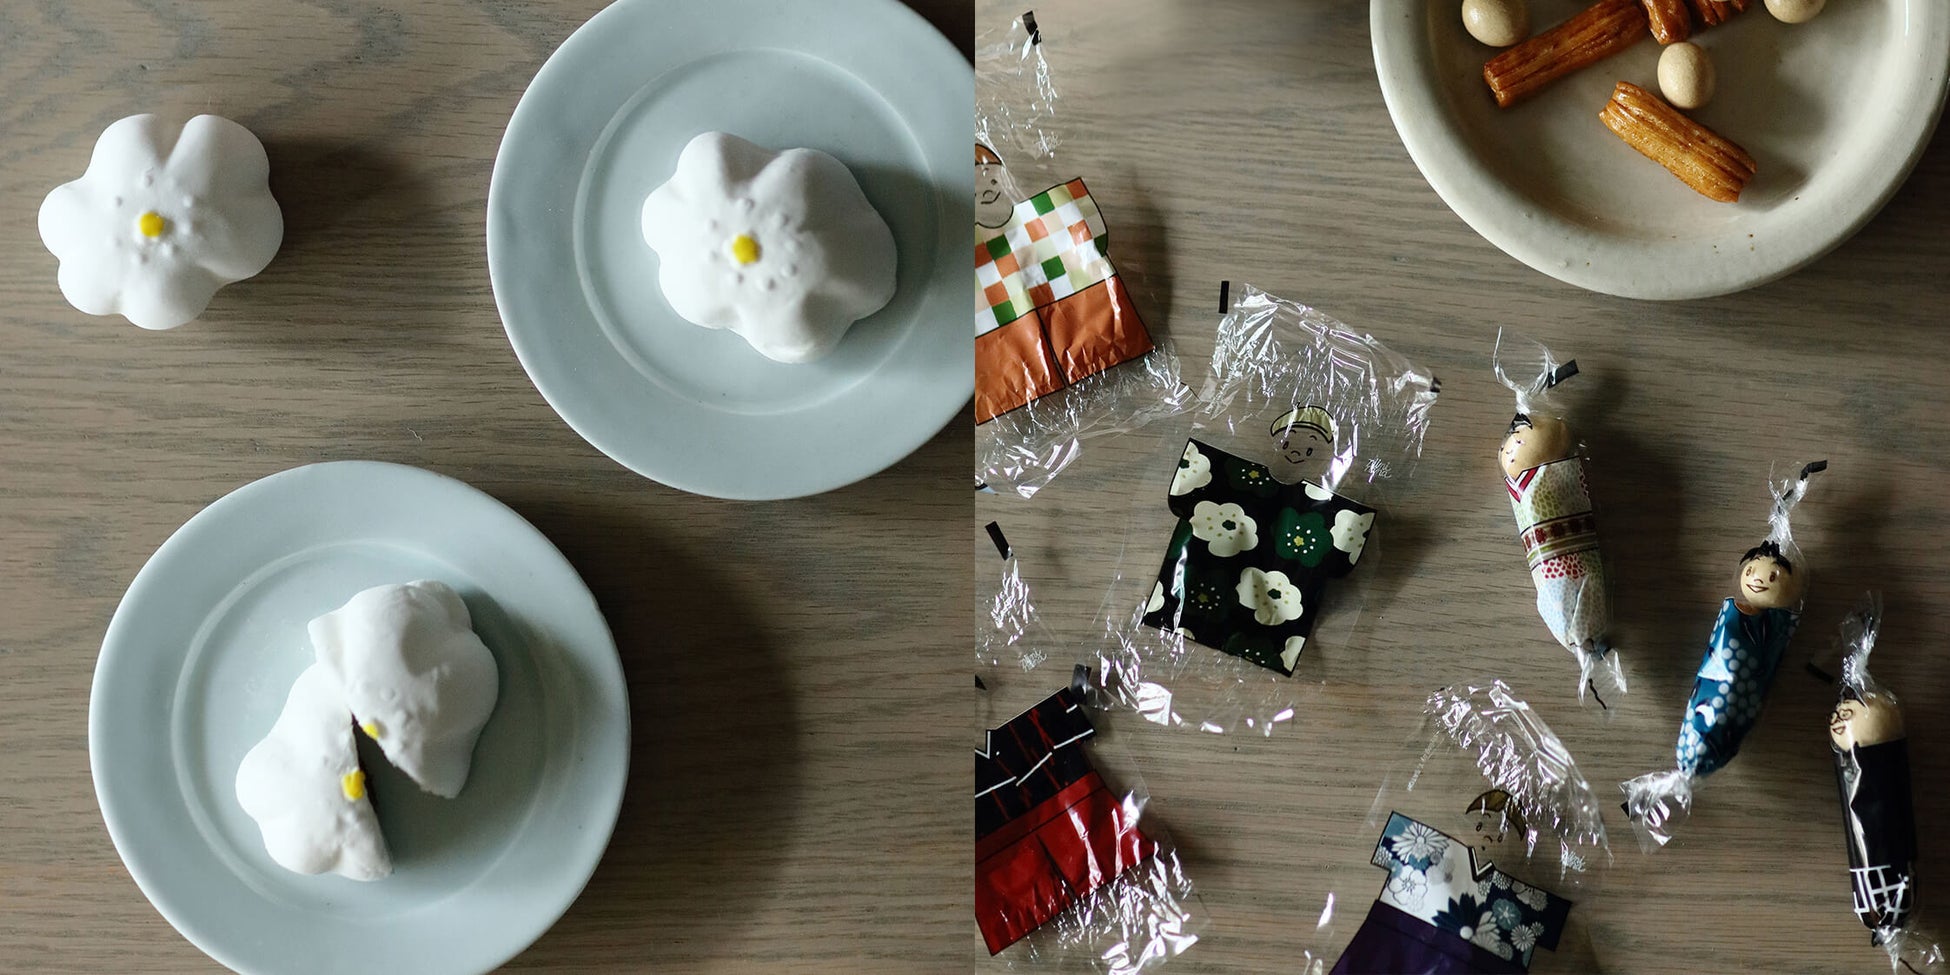 マシュマロのお花と、こけしのあられは、【母の日】【ギフト】にも。京都から、SOU・SOU × 伊藤軒コラボの懐かし和菓子登場。